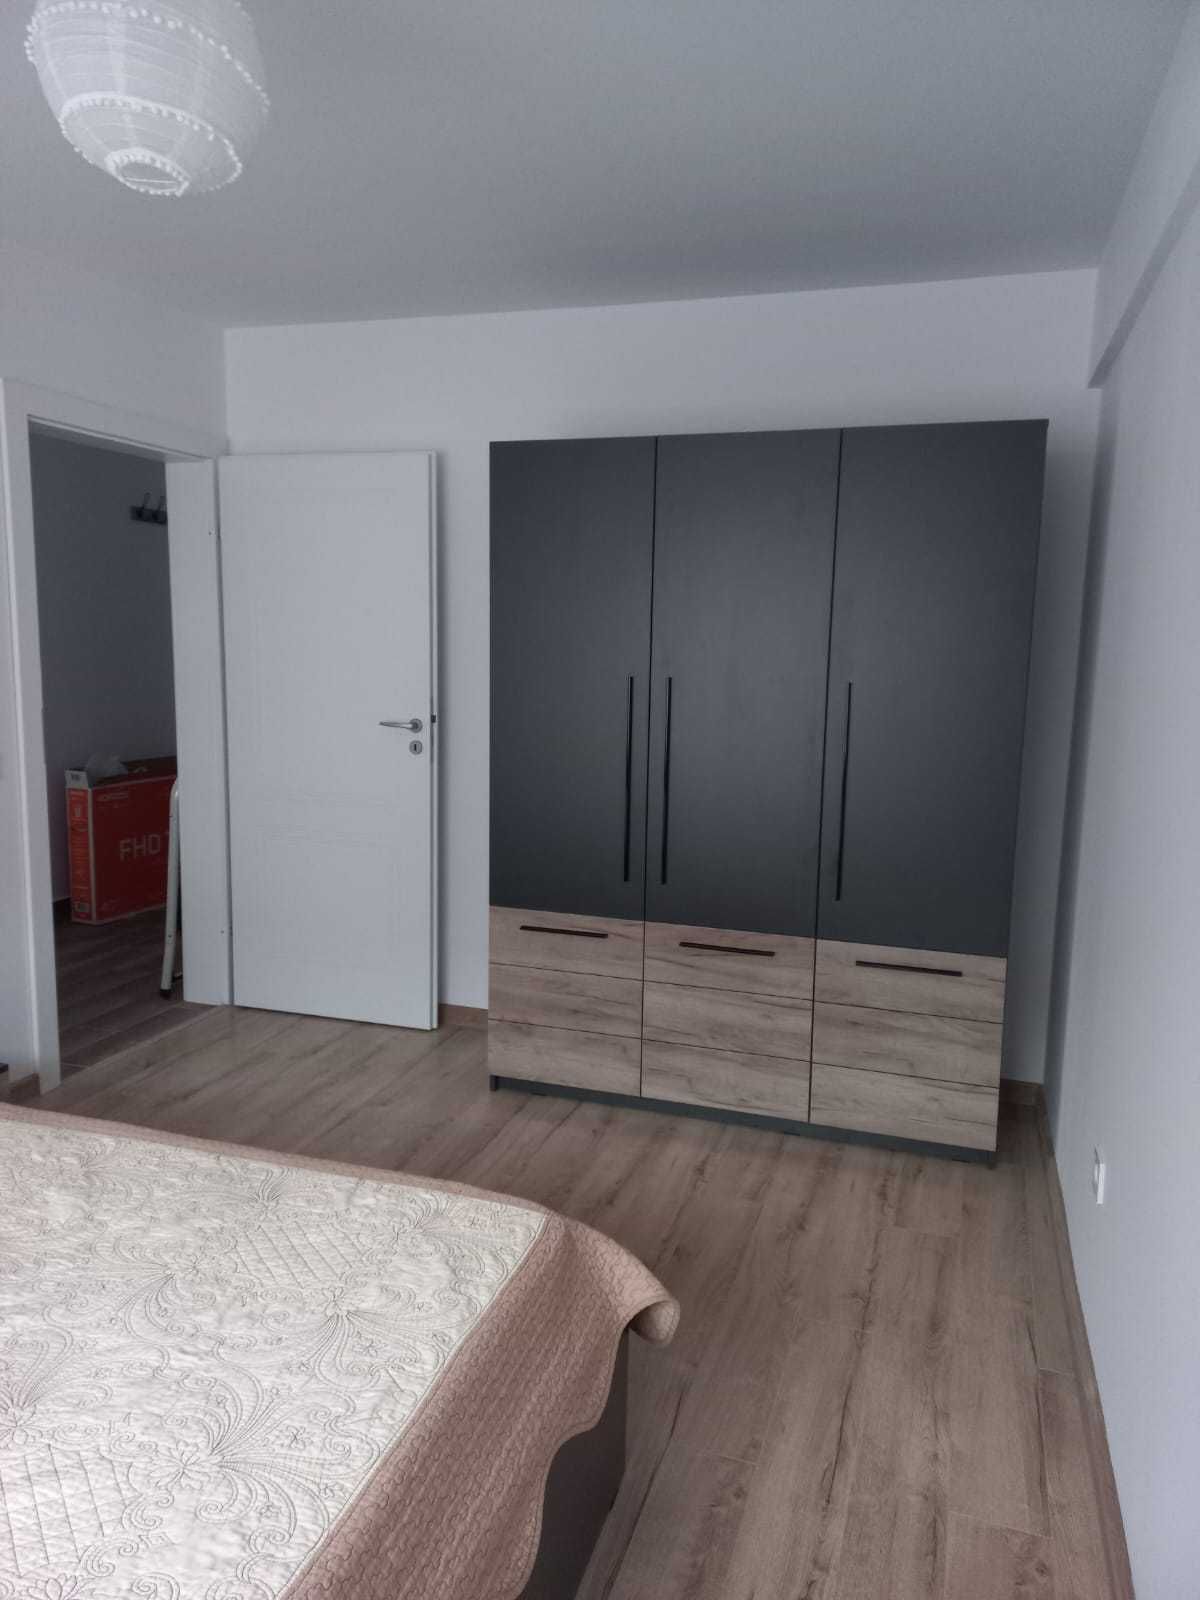 Apartament 2 camere, Copou, Aleea Sadoveanu, nou, prima inchiriere